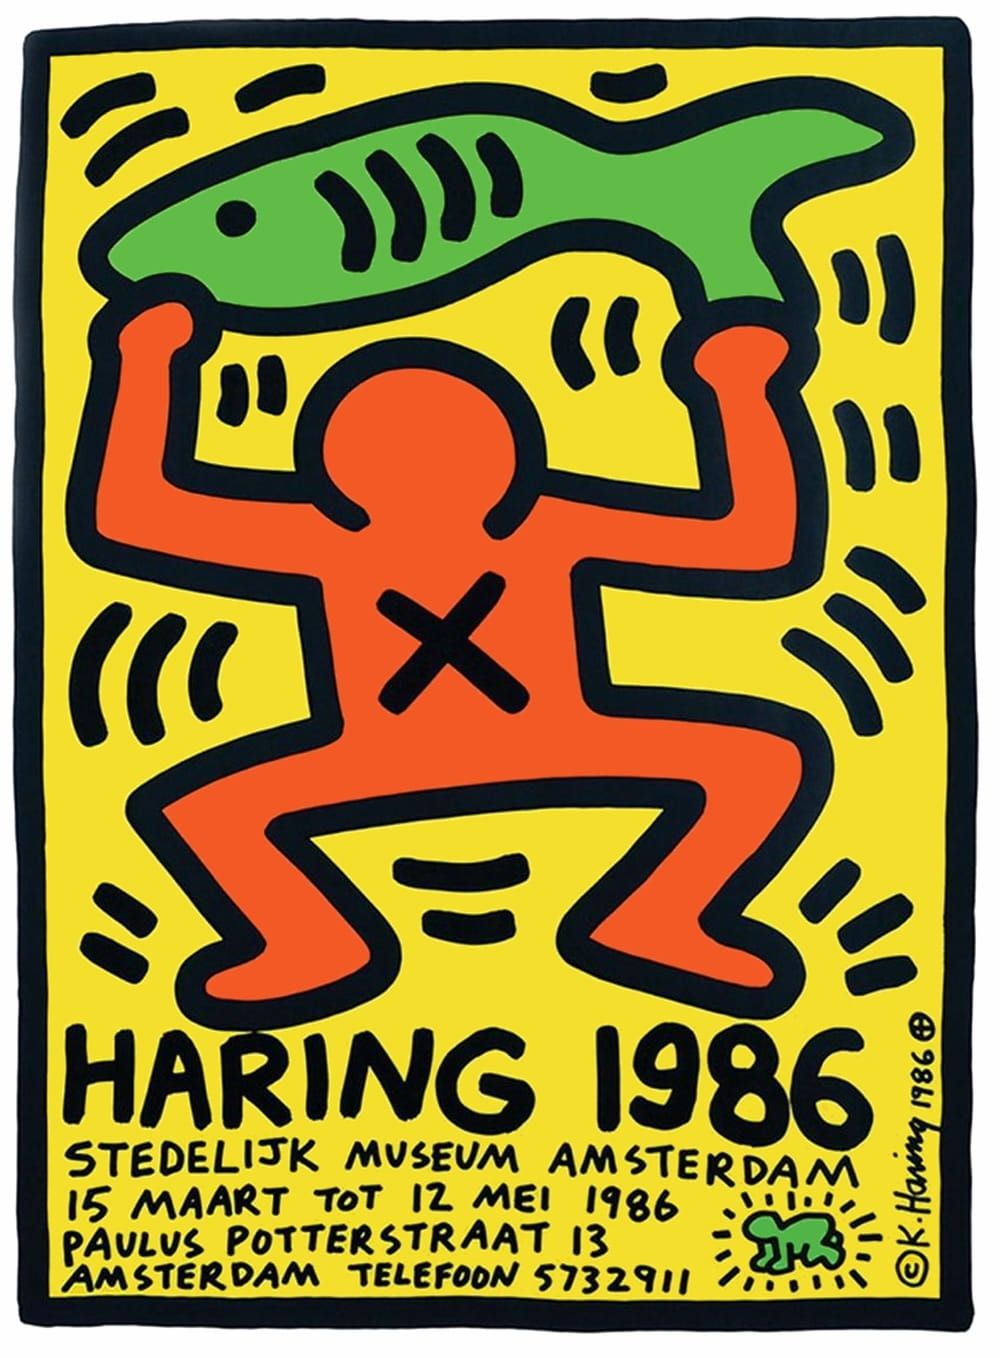 Null 凯斯-哈林（后），阿姆斯特丹海报 1986年

纸质海报，尺寸39 x 53厘米，5张